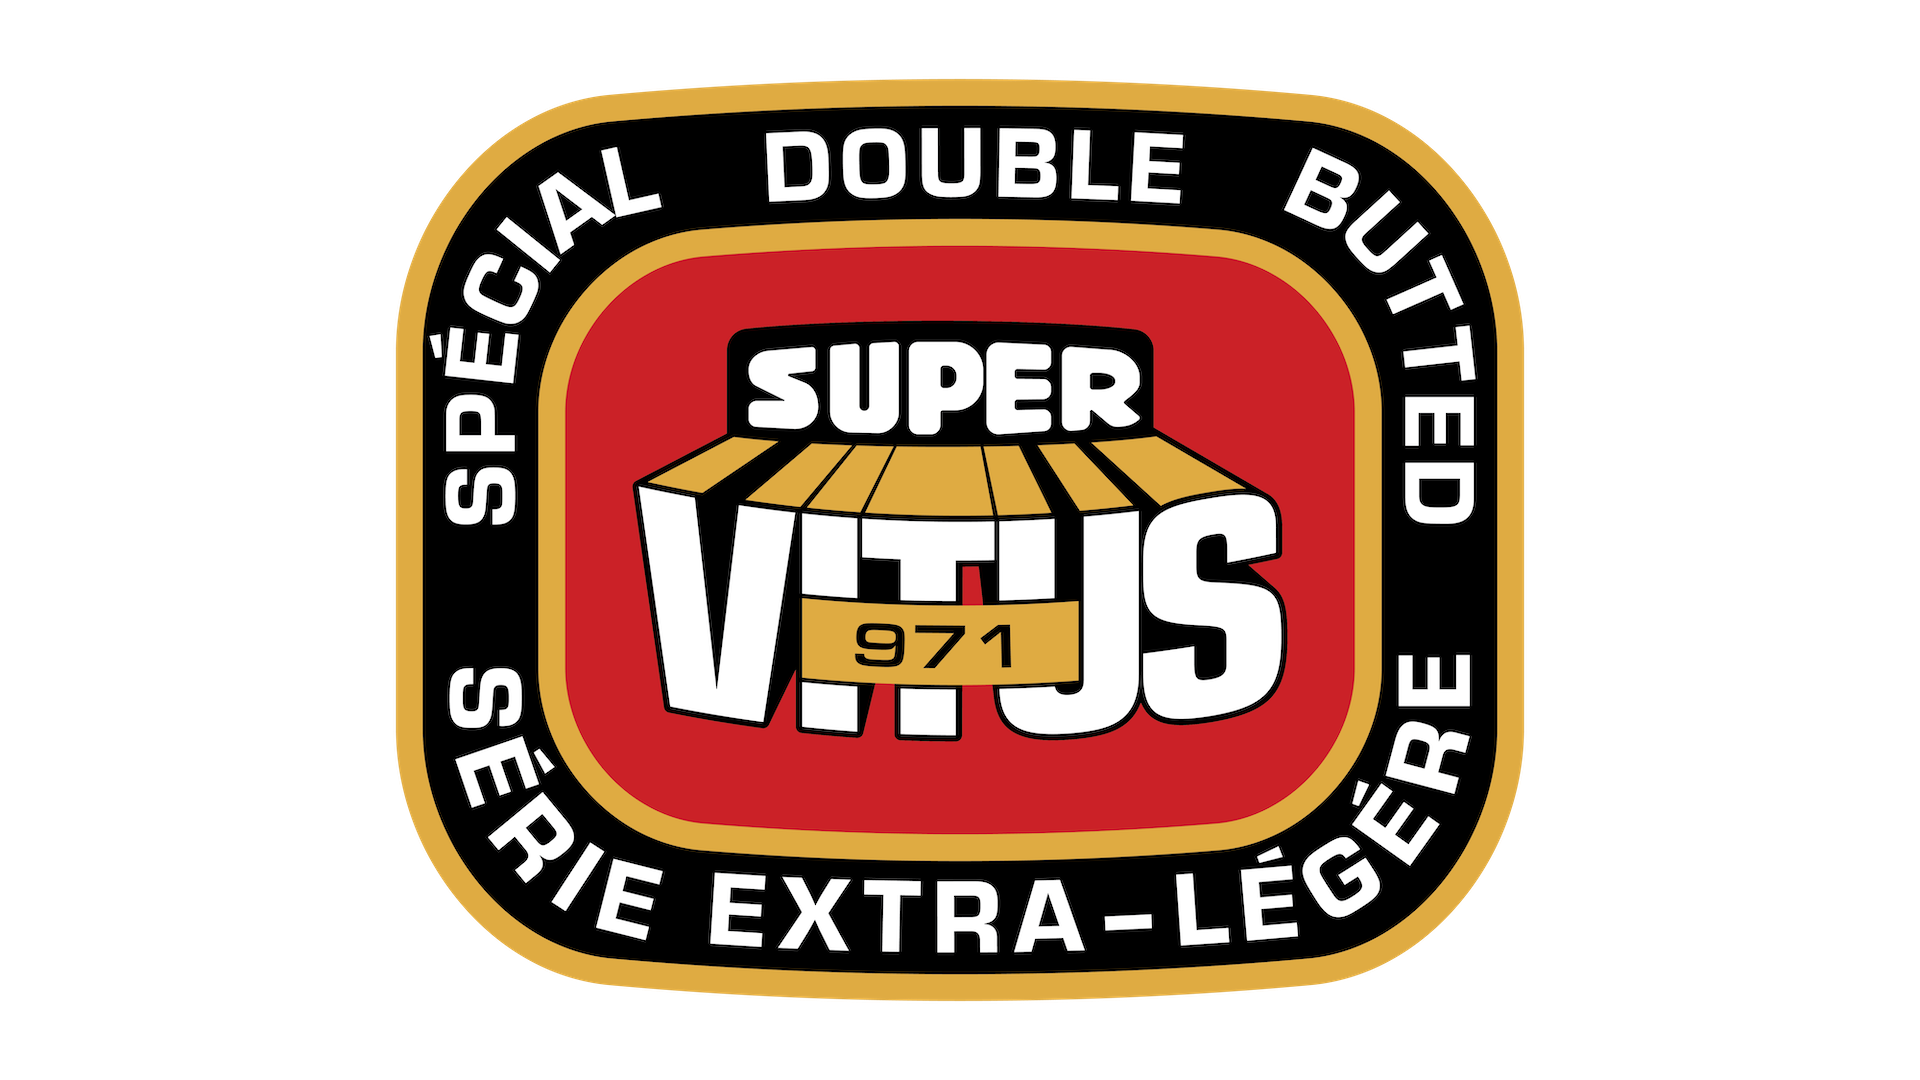 Super Vitus 971 badge